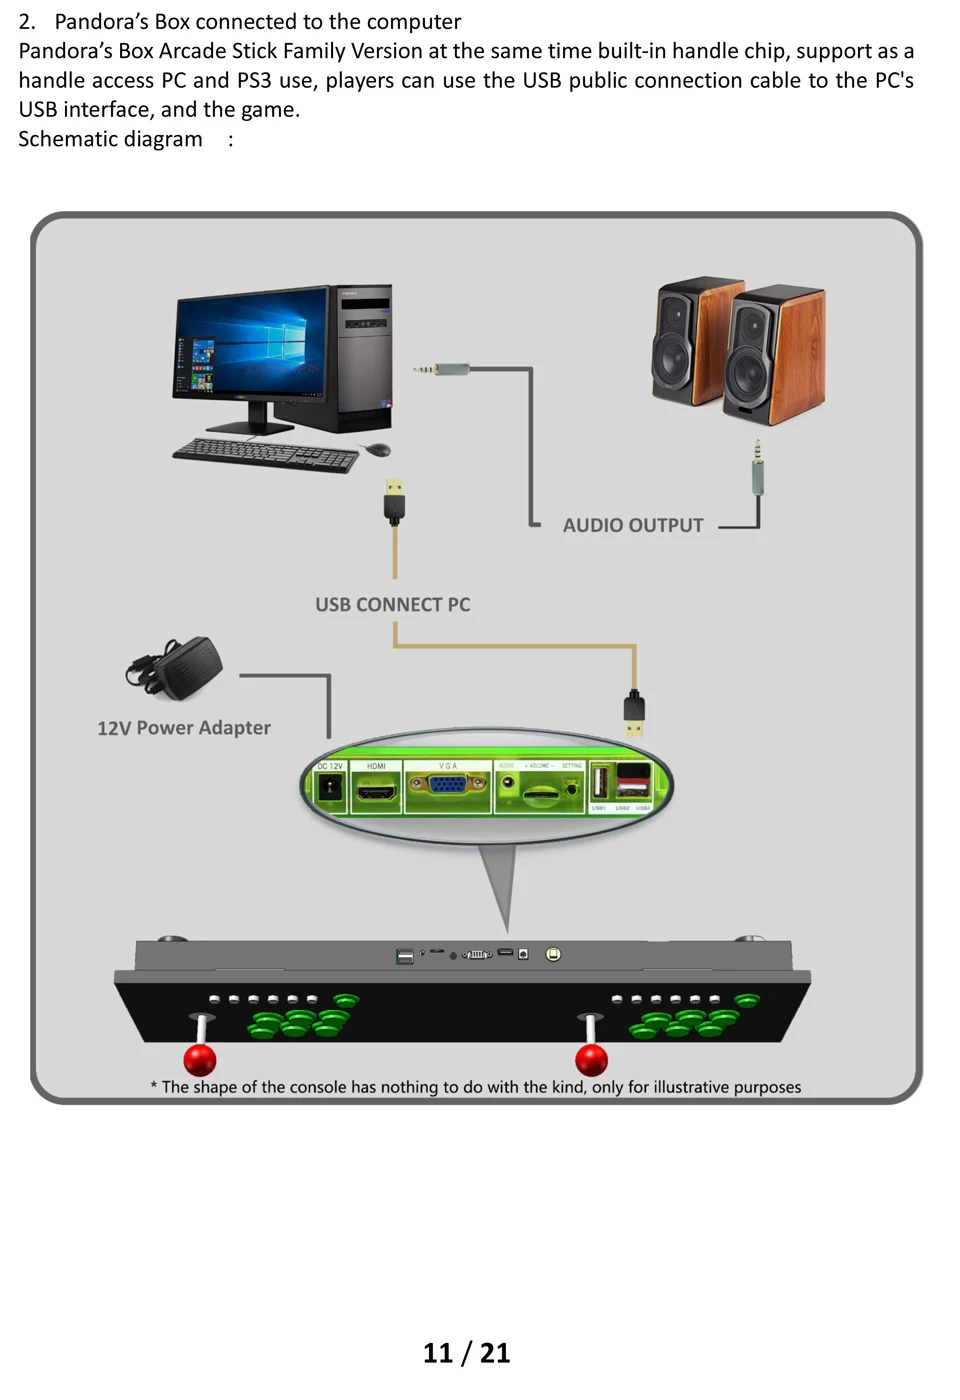 Pandora's Box 9D 2222 в 1 Аркады игровая консоль HDMI VGA из положить для ТВ PC PS3 может пользовательский шаблон изображения